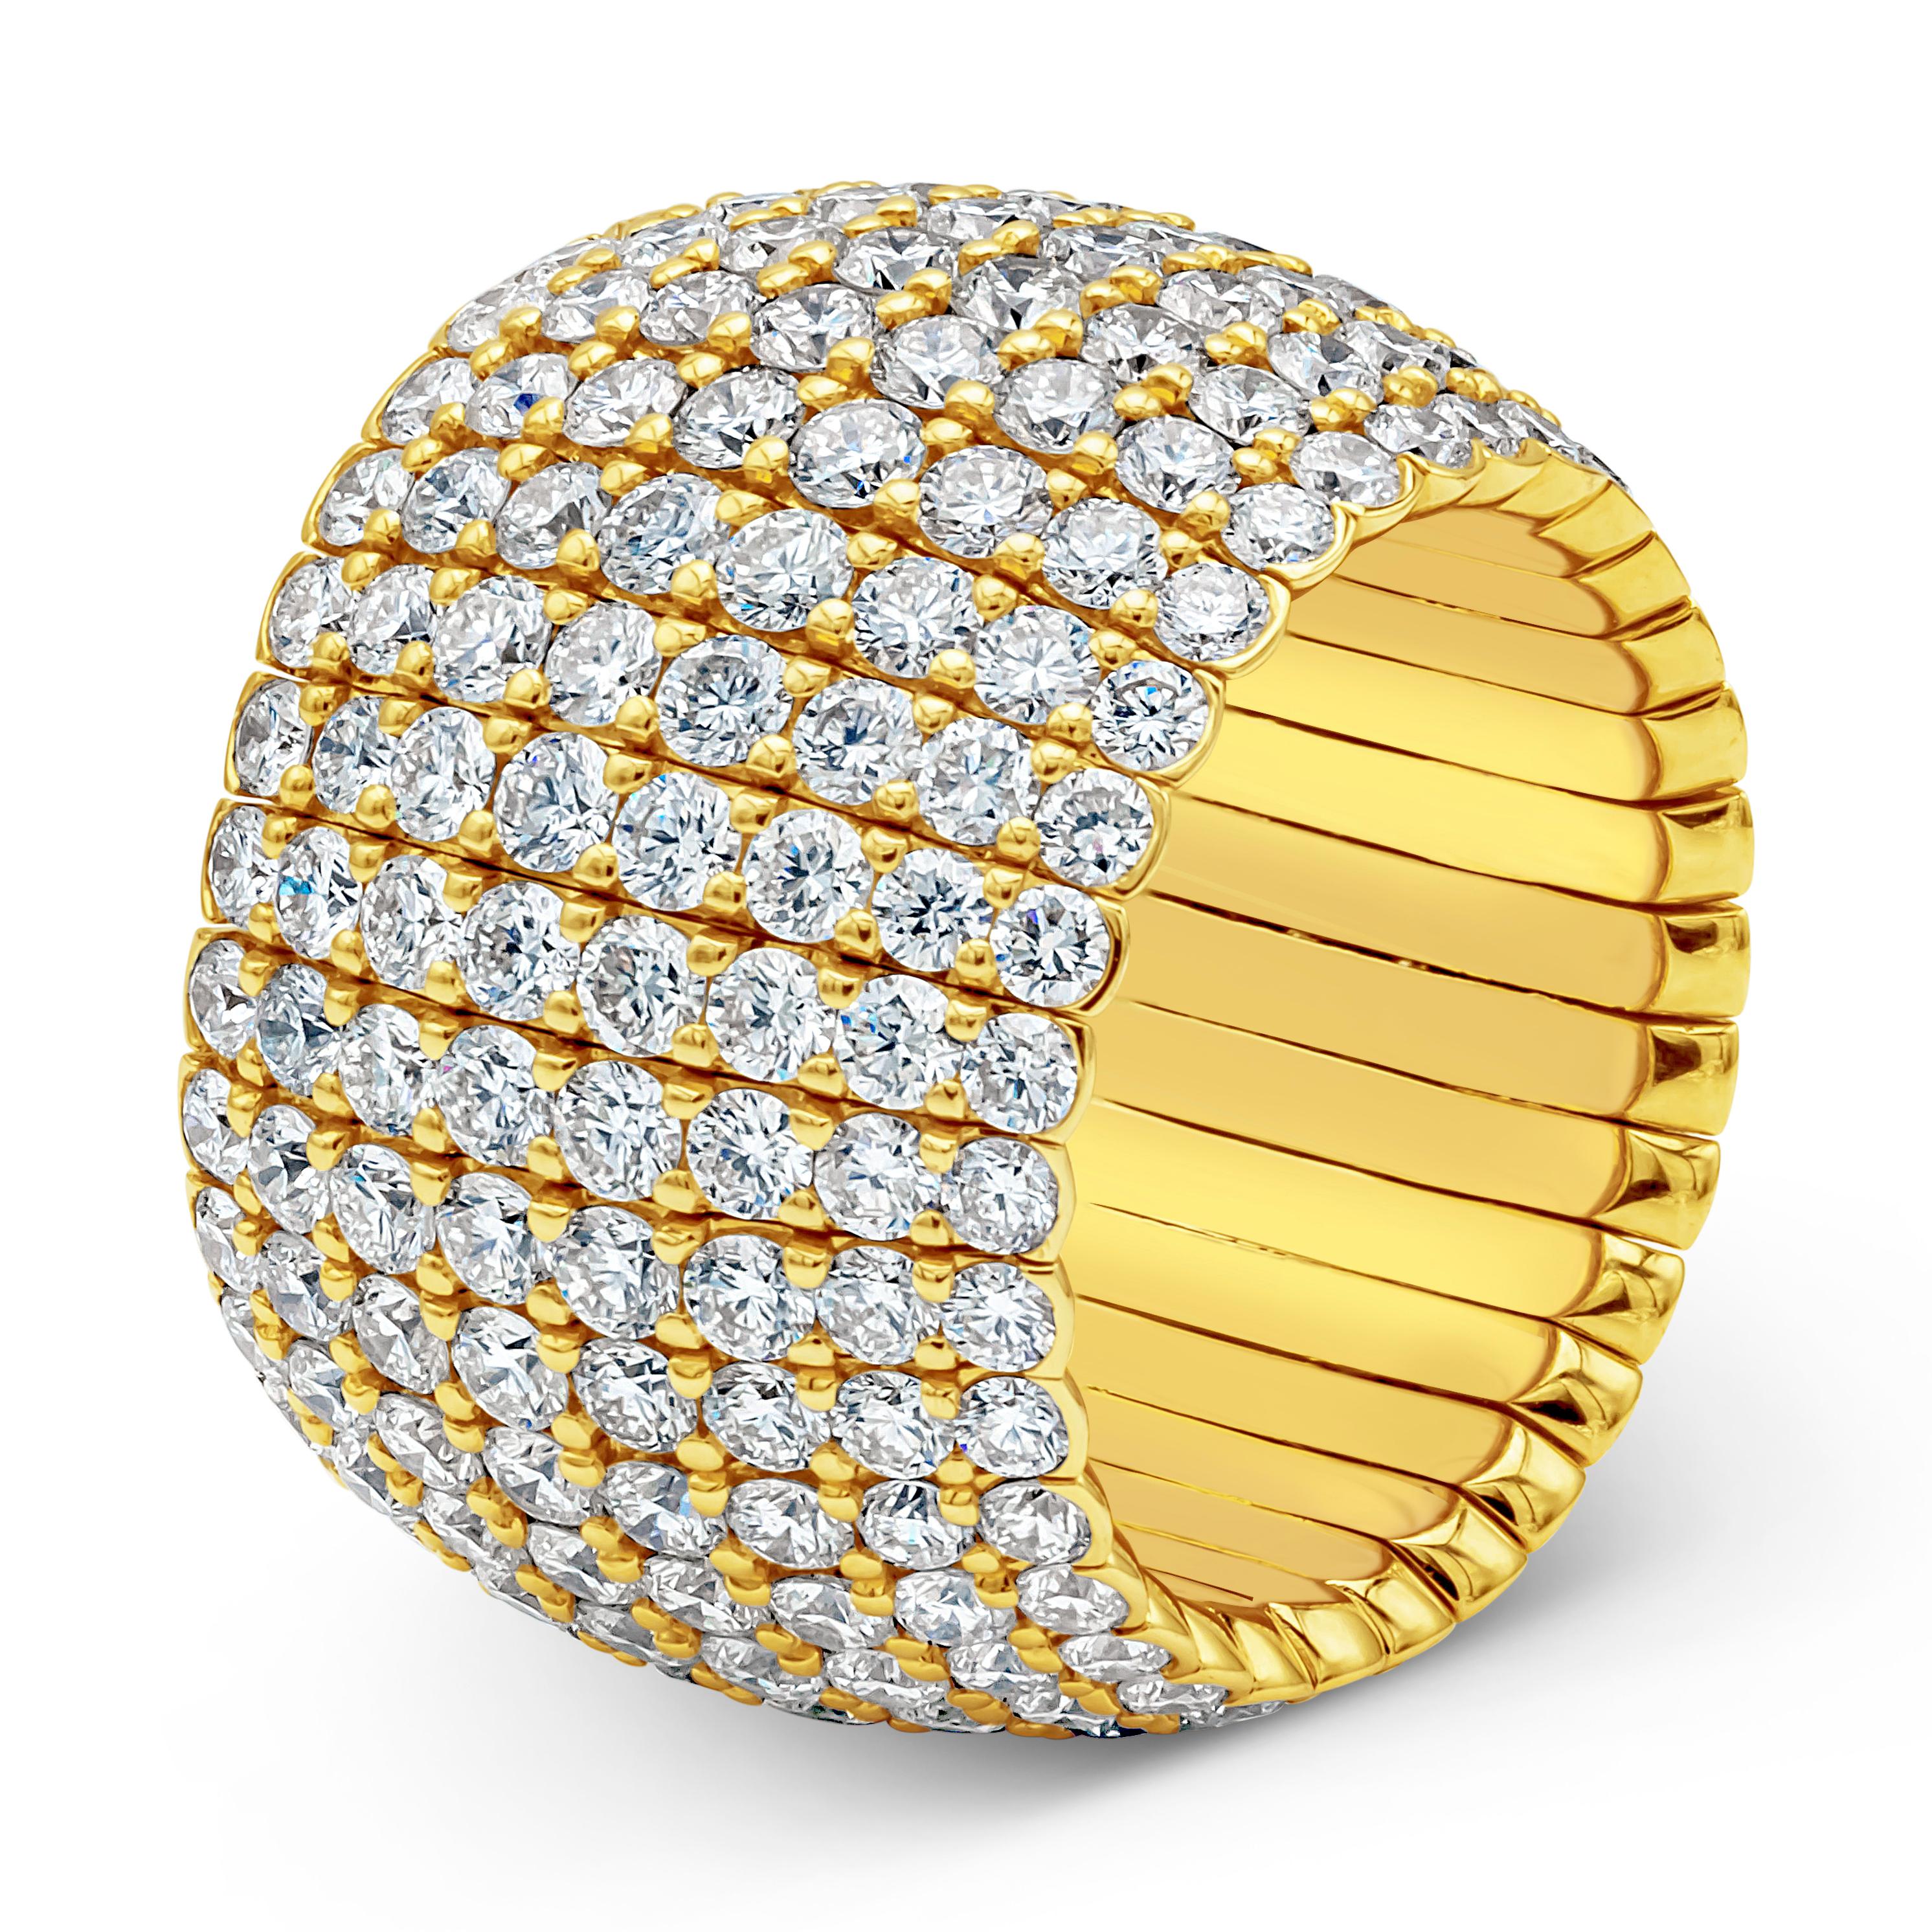 Dieser stilvolle und atemberaubende flexible Modering zeigt acht Reihen von 256 Diamanten mit rundem Brillantschliff und einem Gesamtgewicht von 8,11 Karat, gefasst in einer schönen Mikropave-Fassung und einer gemeinsamen Zackenfassung. Fein